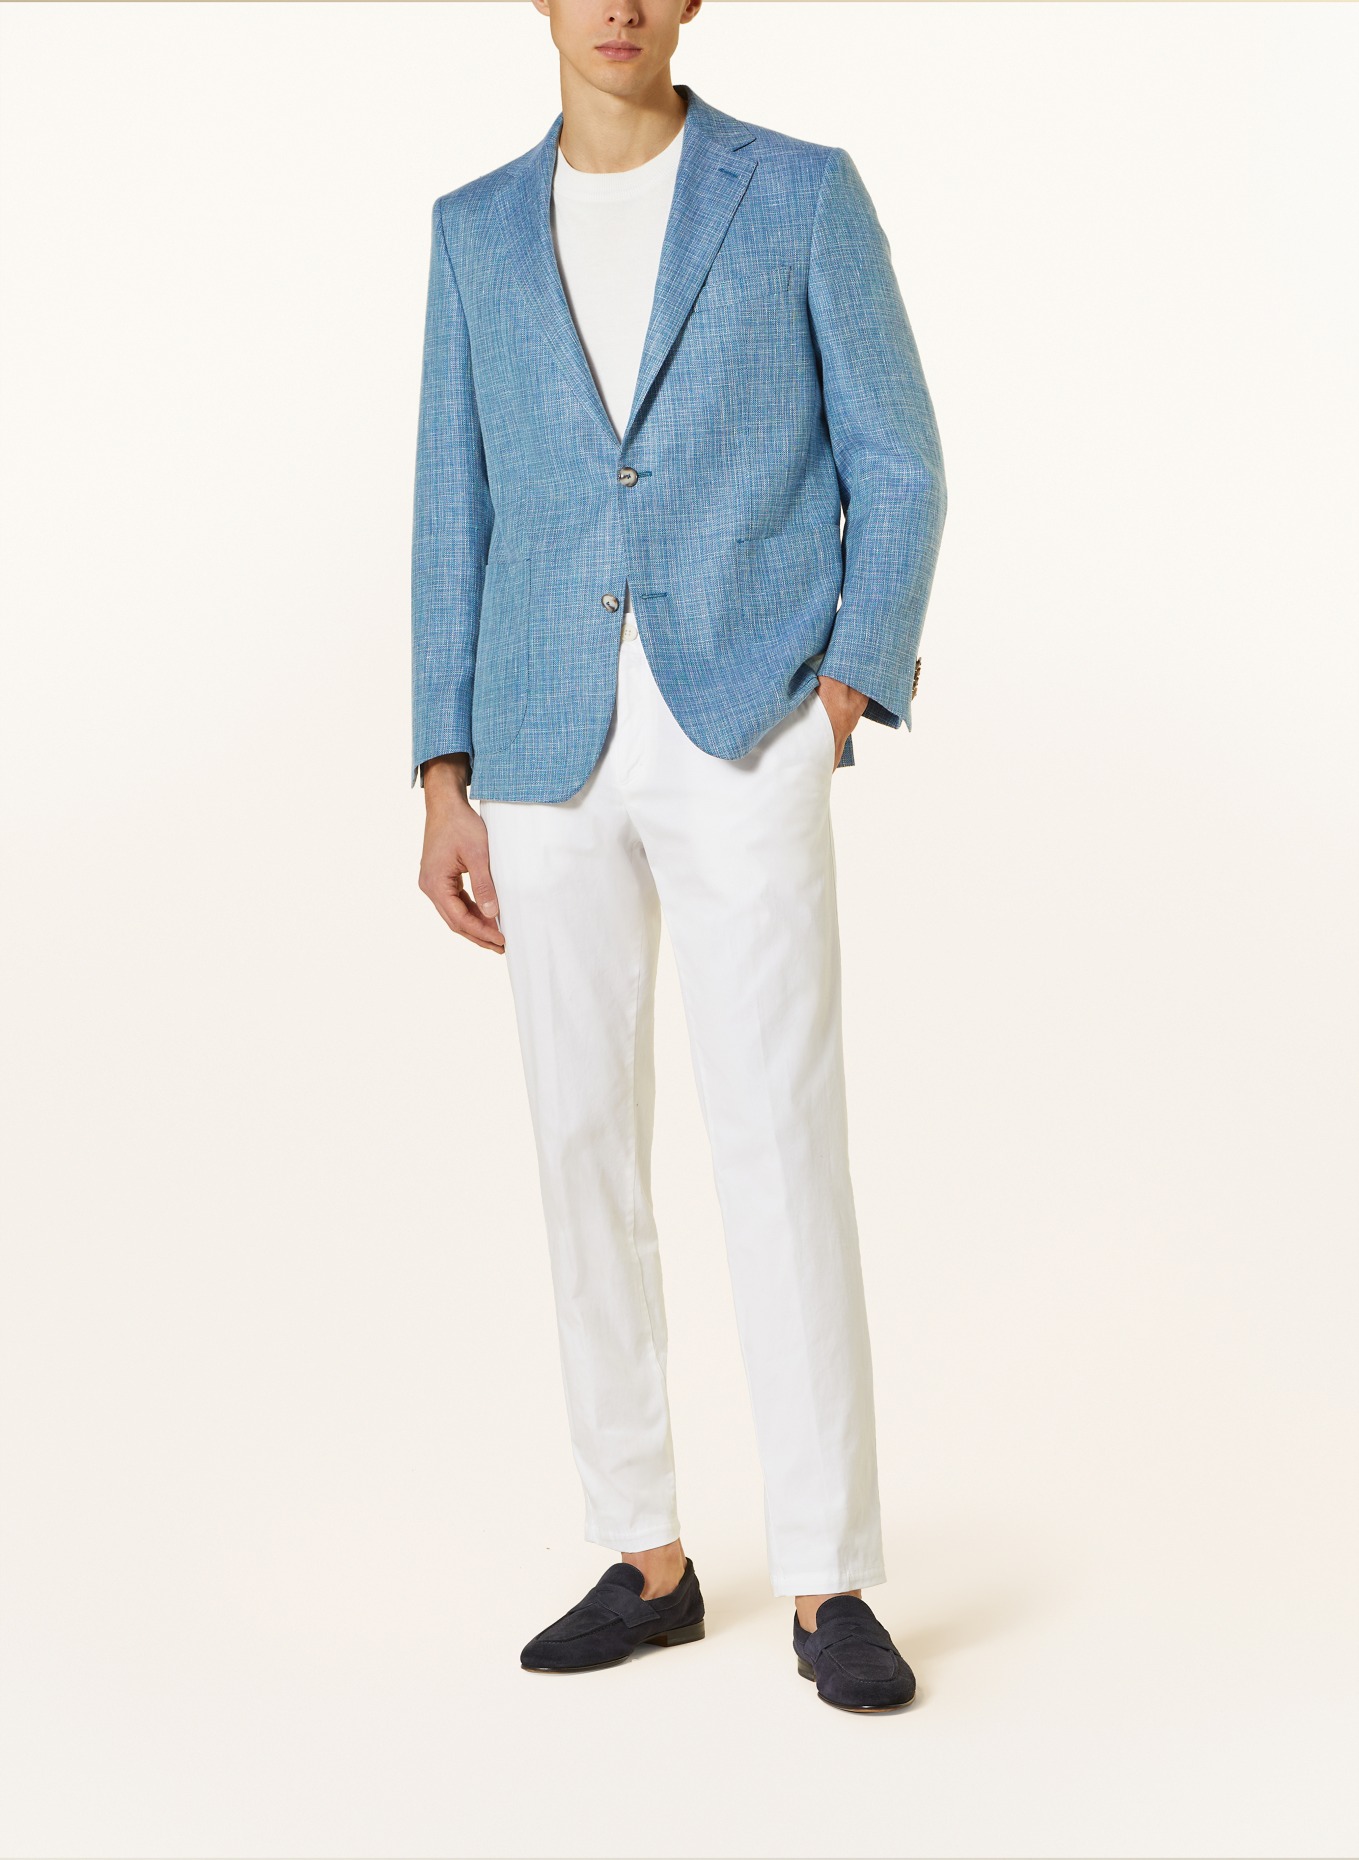 EDUARD DRESSLER Tailored jacket MATTEO comfort fit with linen, Color: 039 HELLBLAU (Image 2)